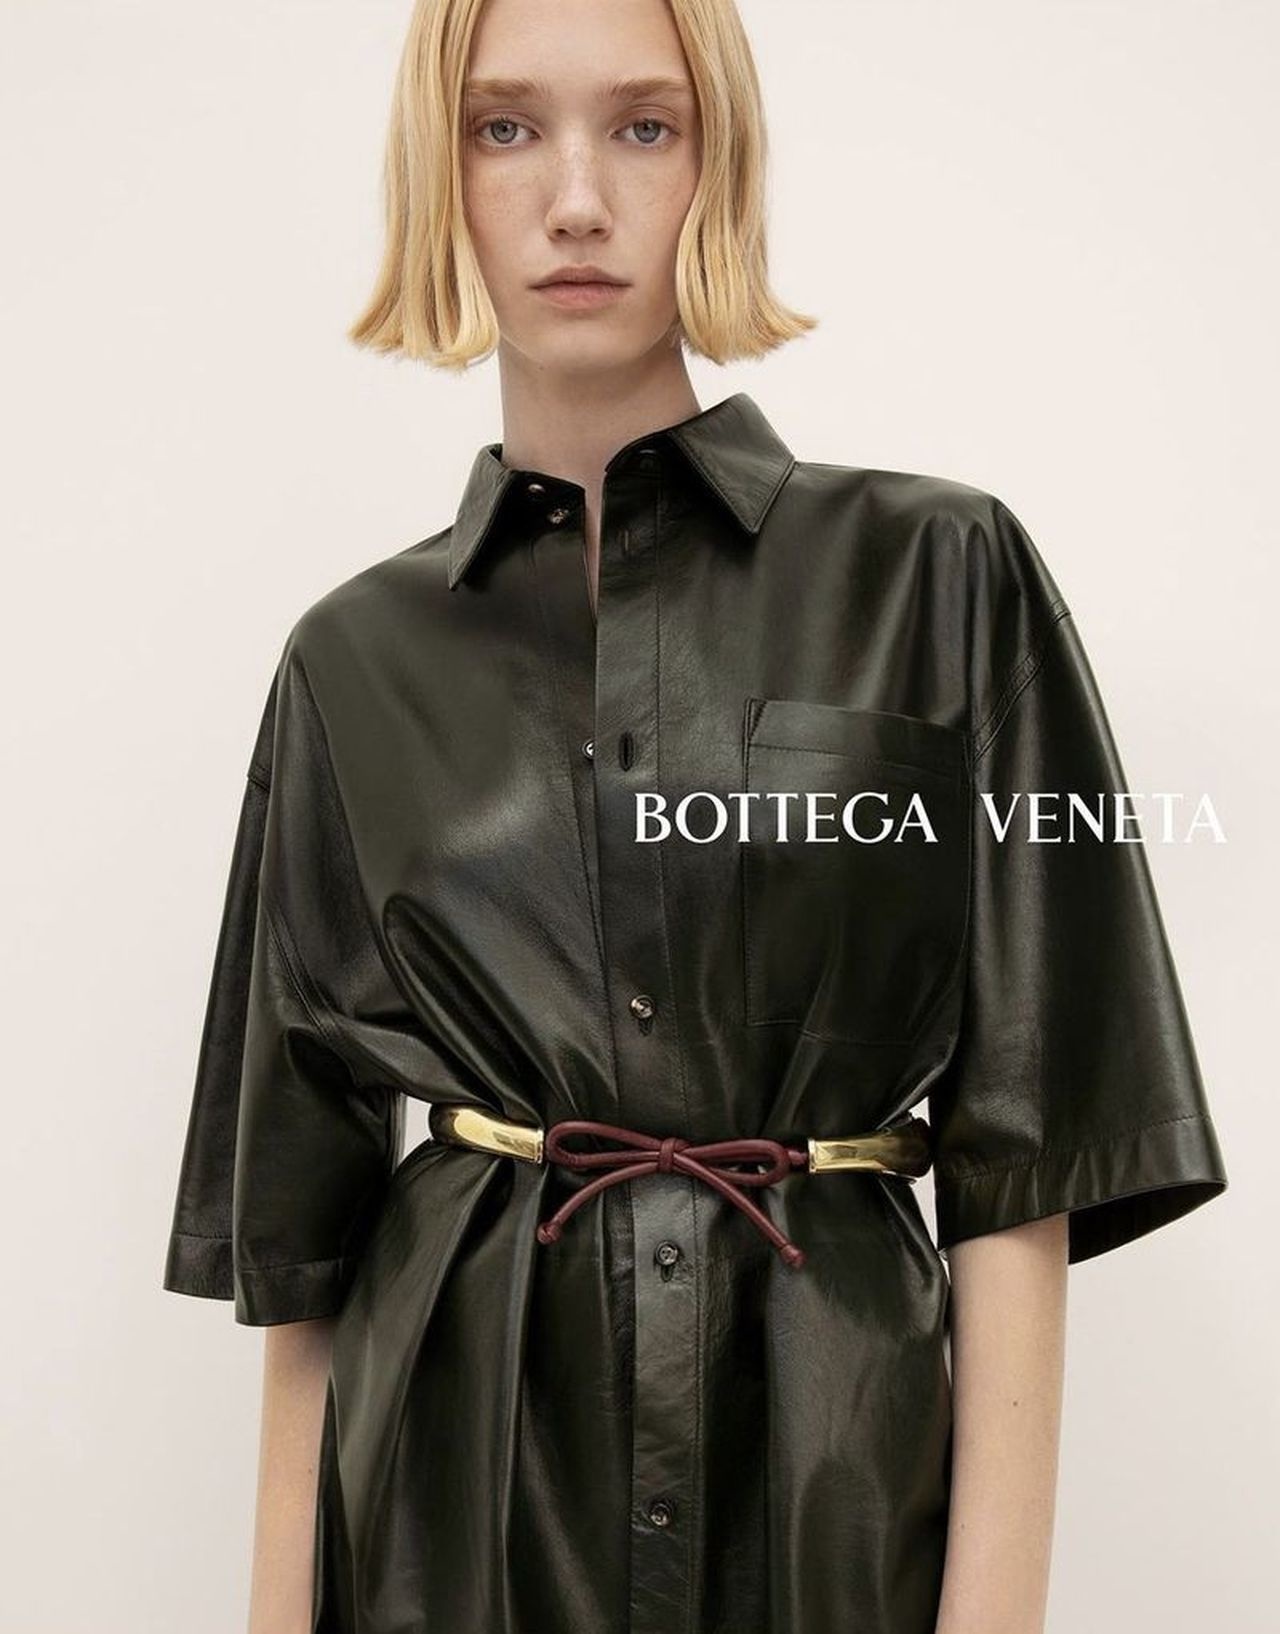 Bottega Veneta Pre-Spring 2023 Campaign